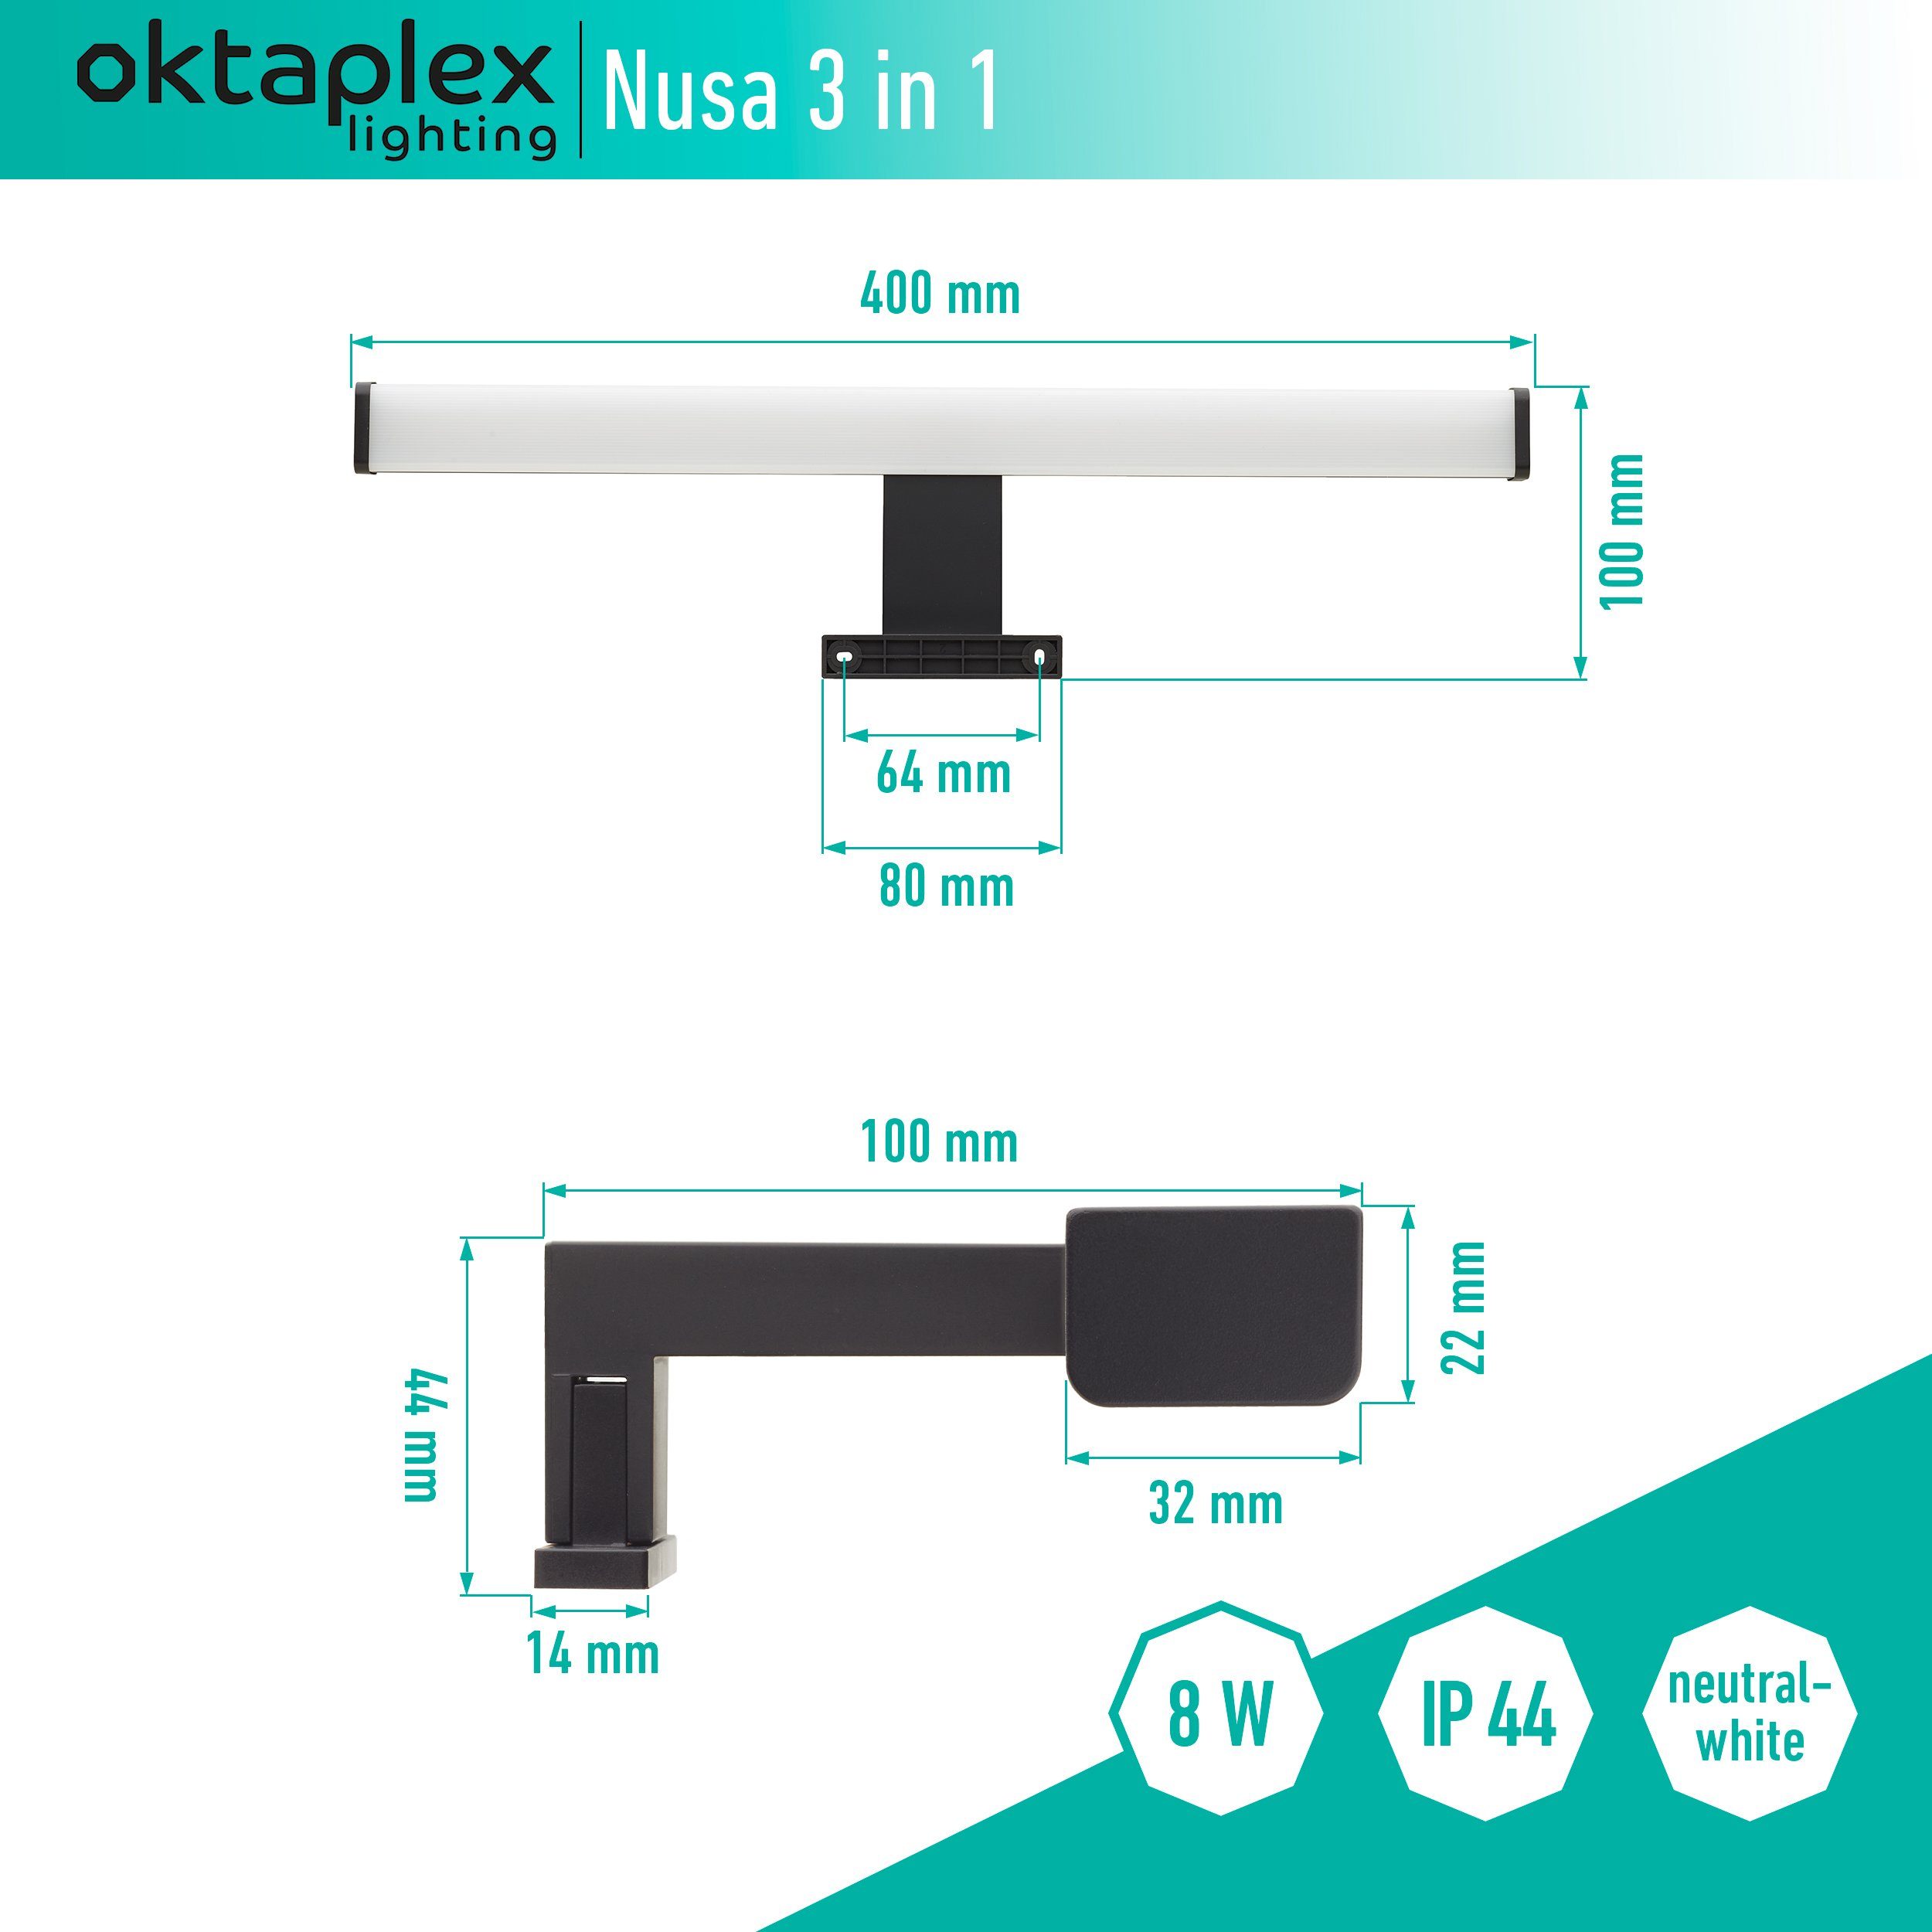 Oktaplex lighting LED Spiegelleuchte Bad Schminklicht 40cm LED 570lm neutralweiß fest 8W, schwarz, 4000K, in Spiegellampe IP44 Nusa 3 verbaut, 1